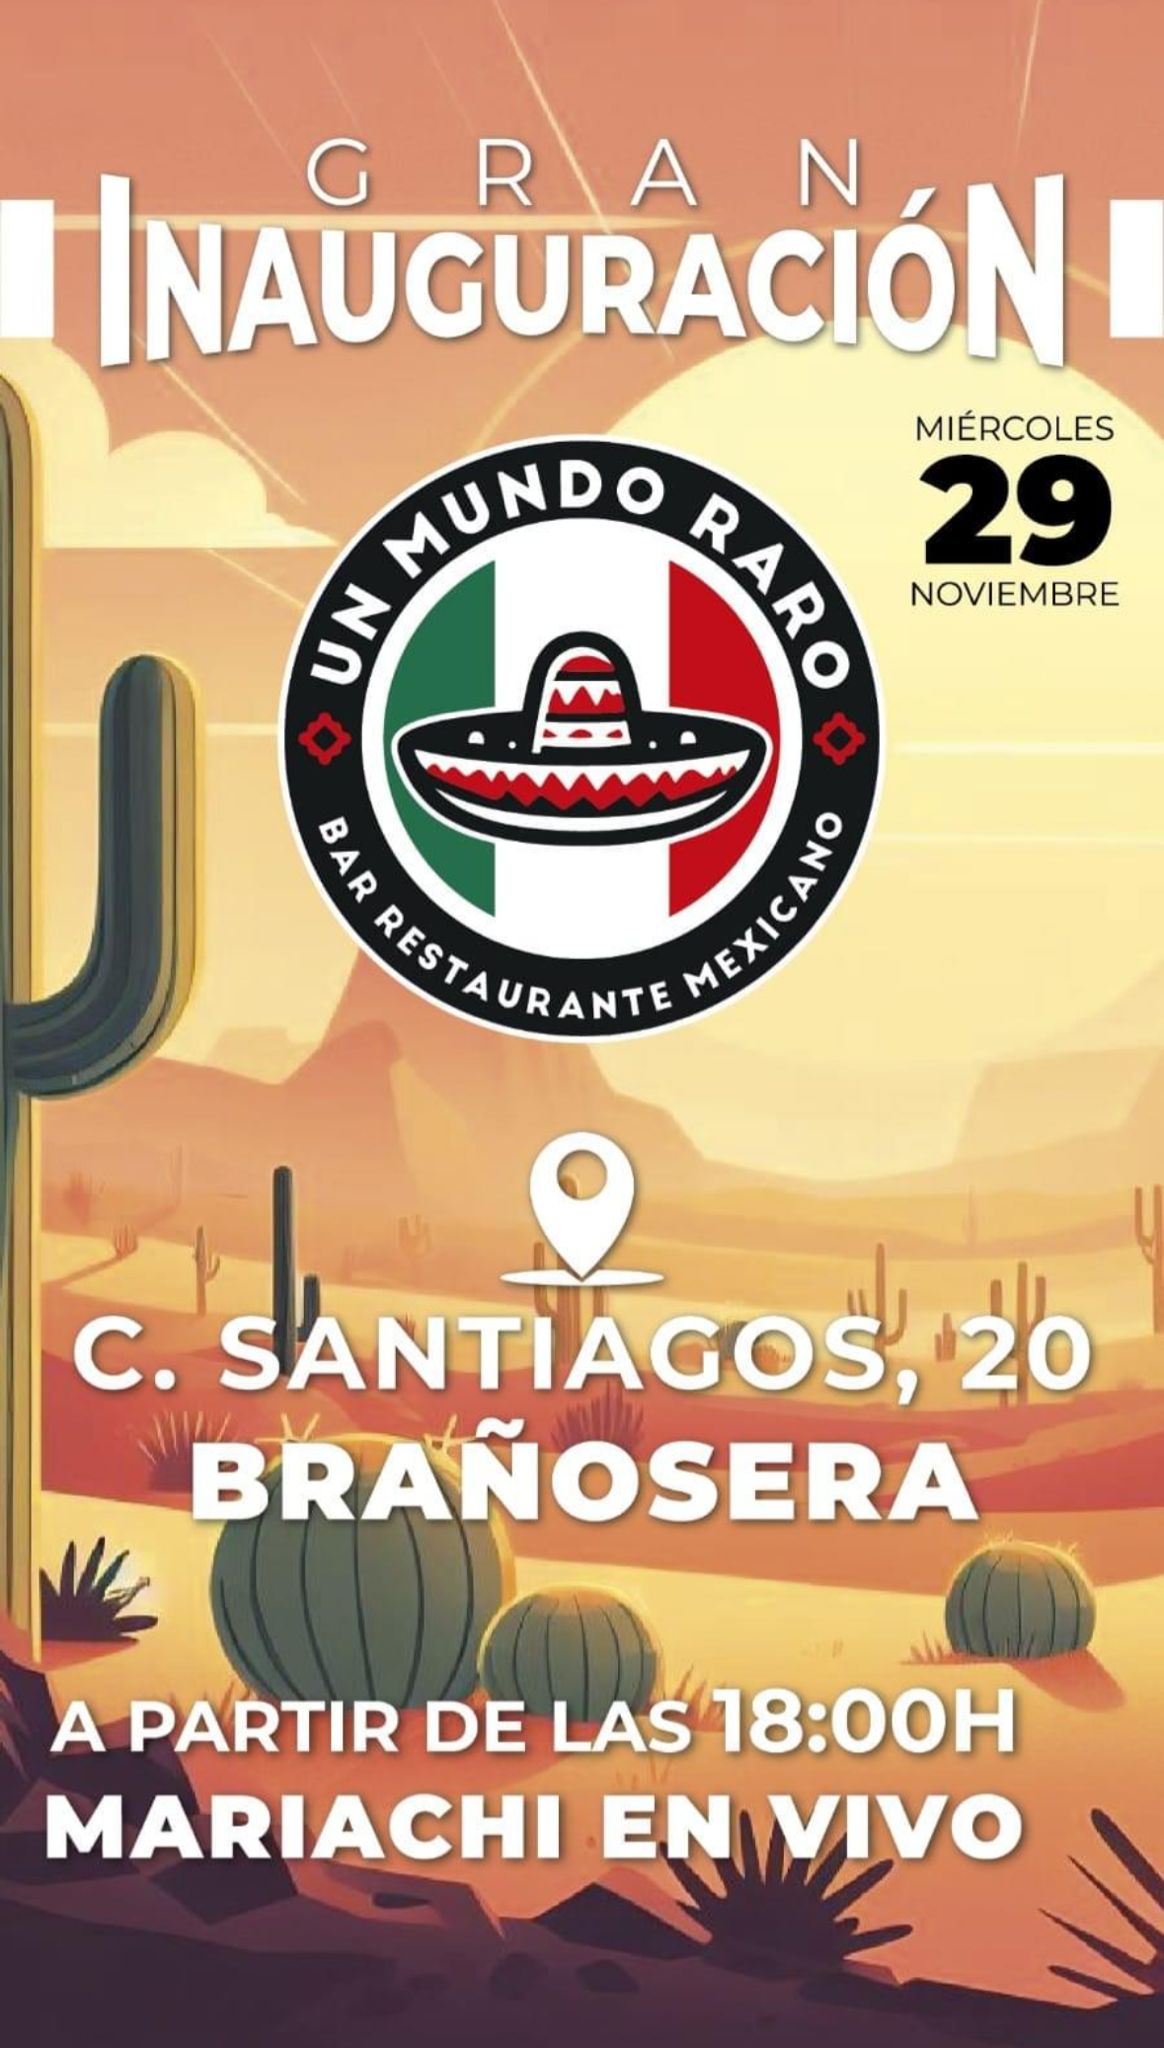 Un Mundo Raro, un bar restaurante mexicano ubicado en Brañosera.